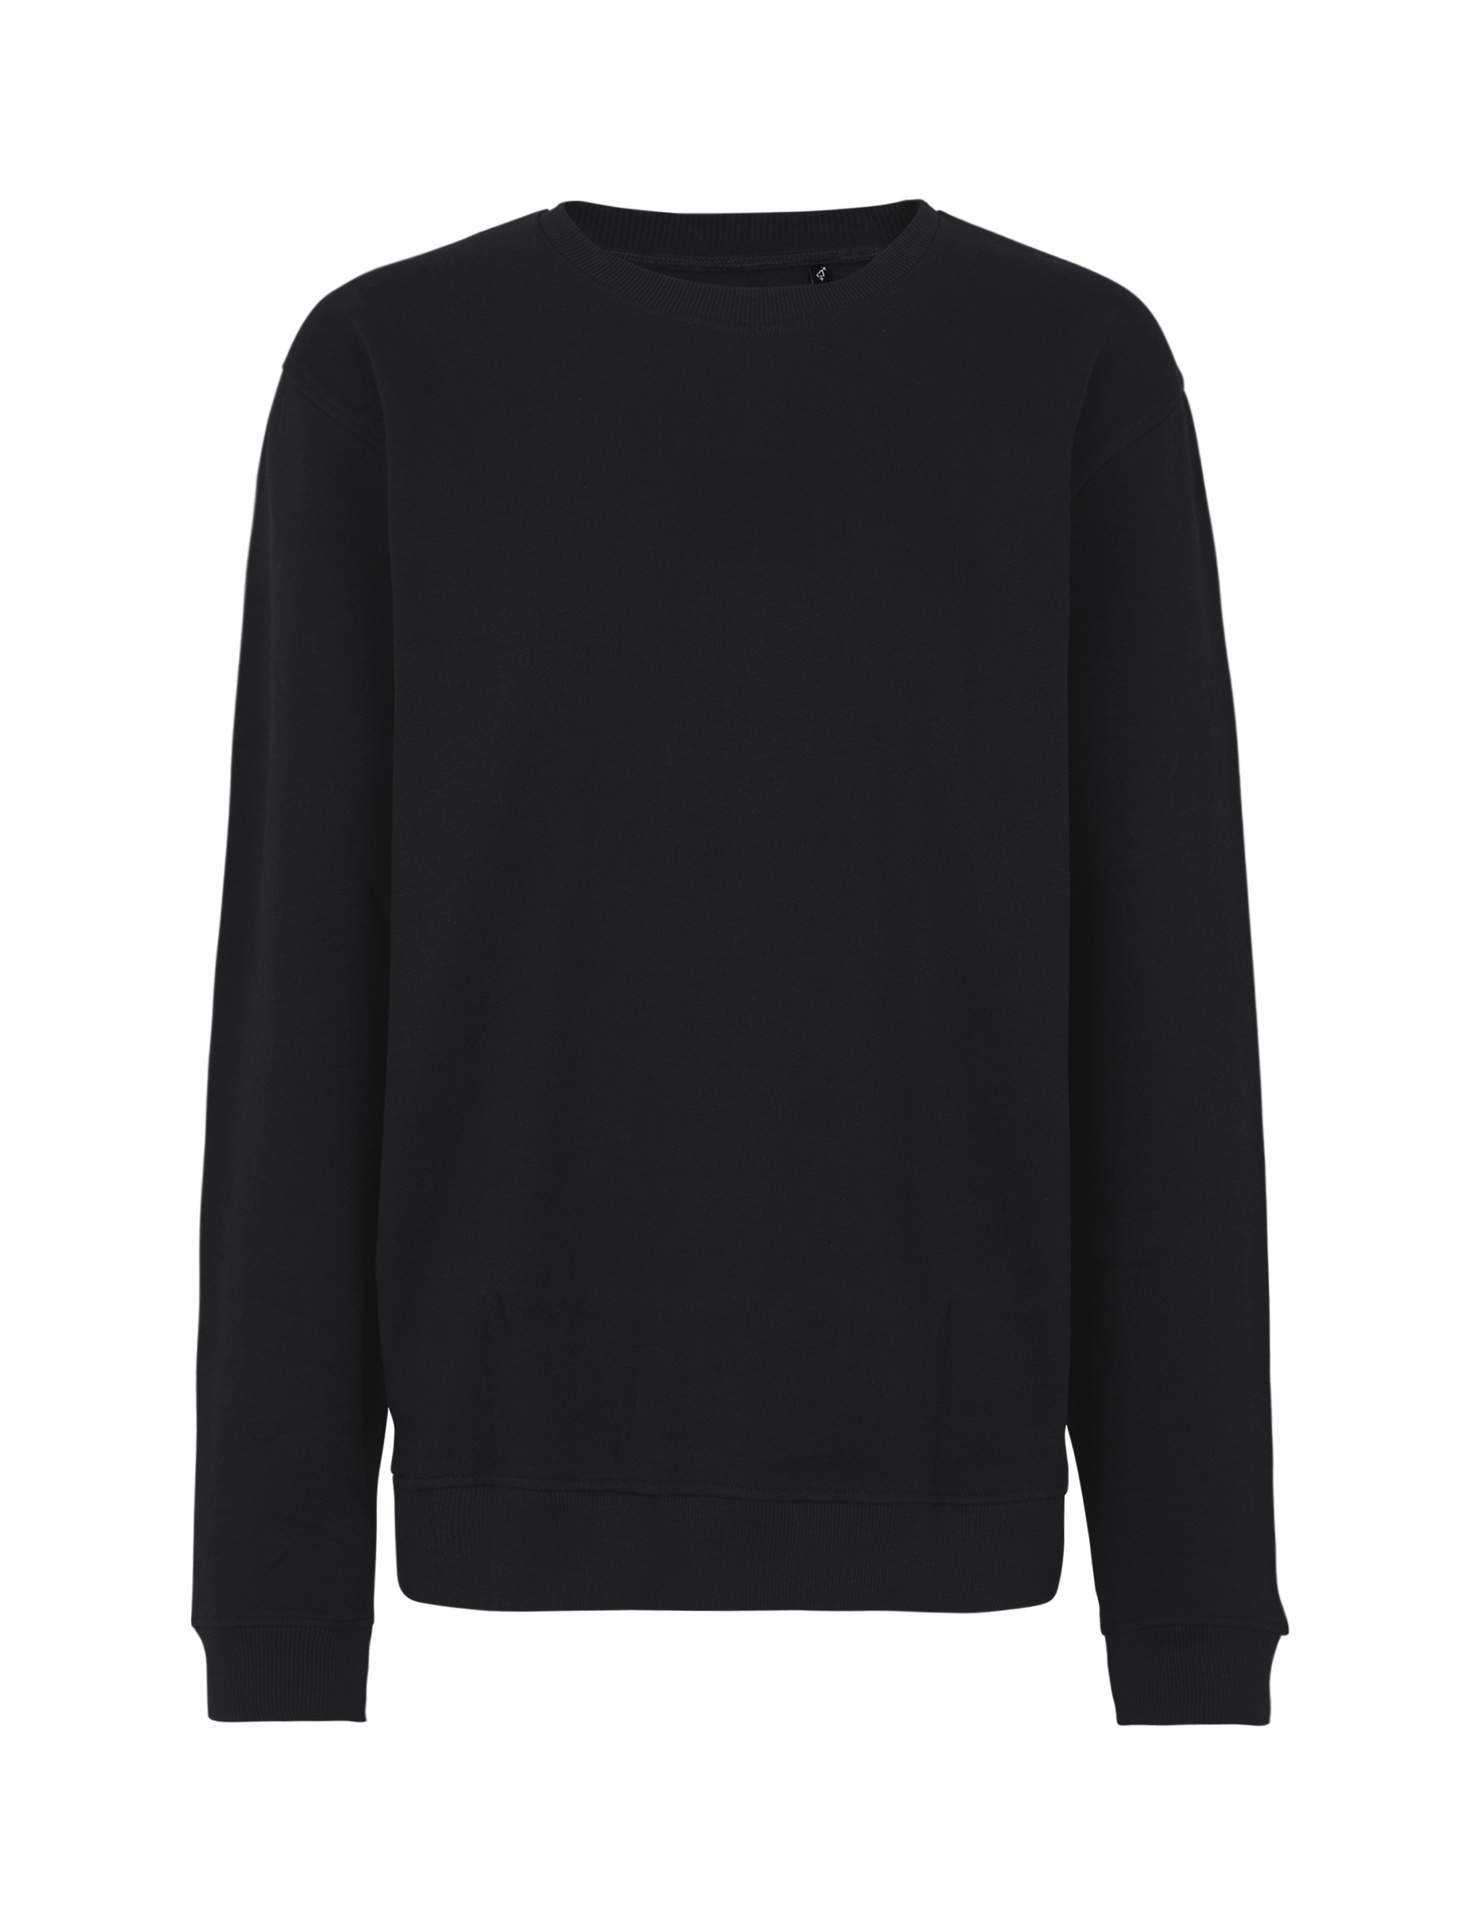 [PR/03525] Unisex Workwear Sweatshirt (Black 03, S)